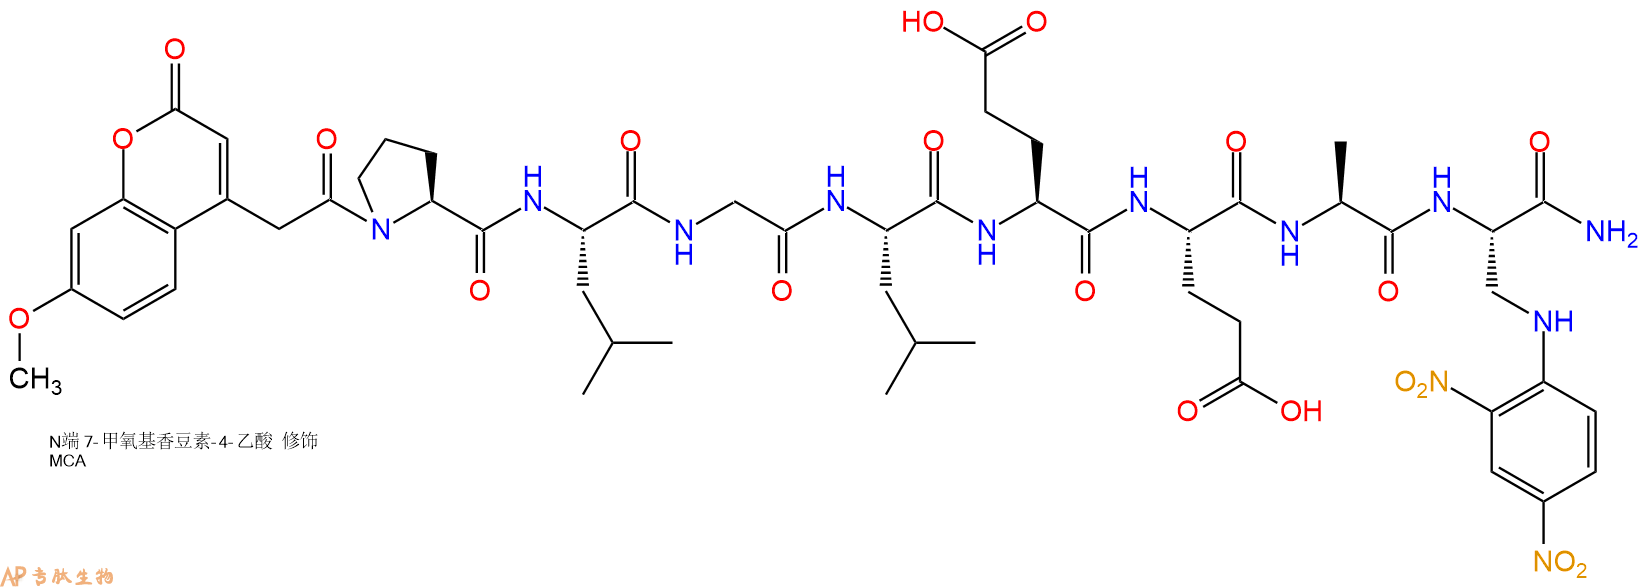 多肽生物产品Mca-Pro-Leu-Gly-Leu-Glu-Glu-Ala-Dap(Dnp)-NH2891198-38-2